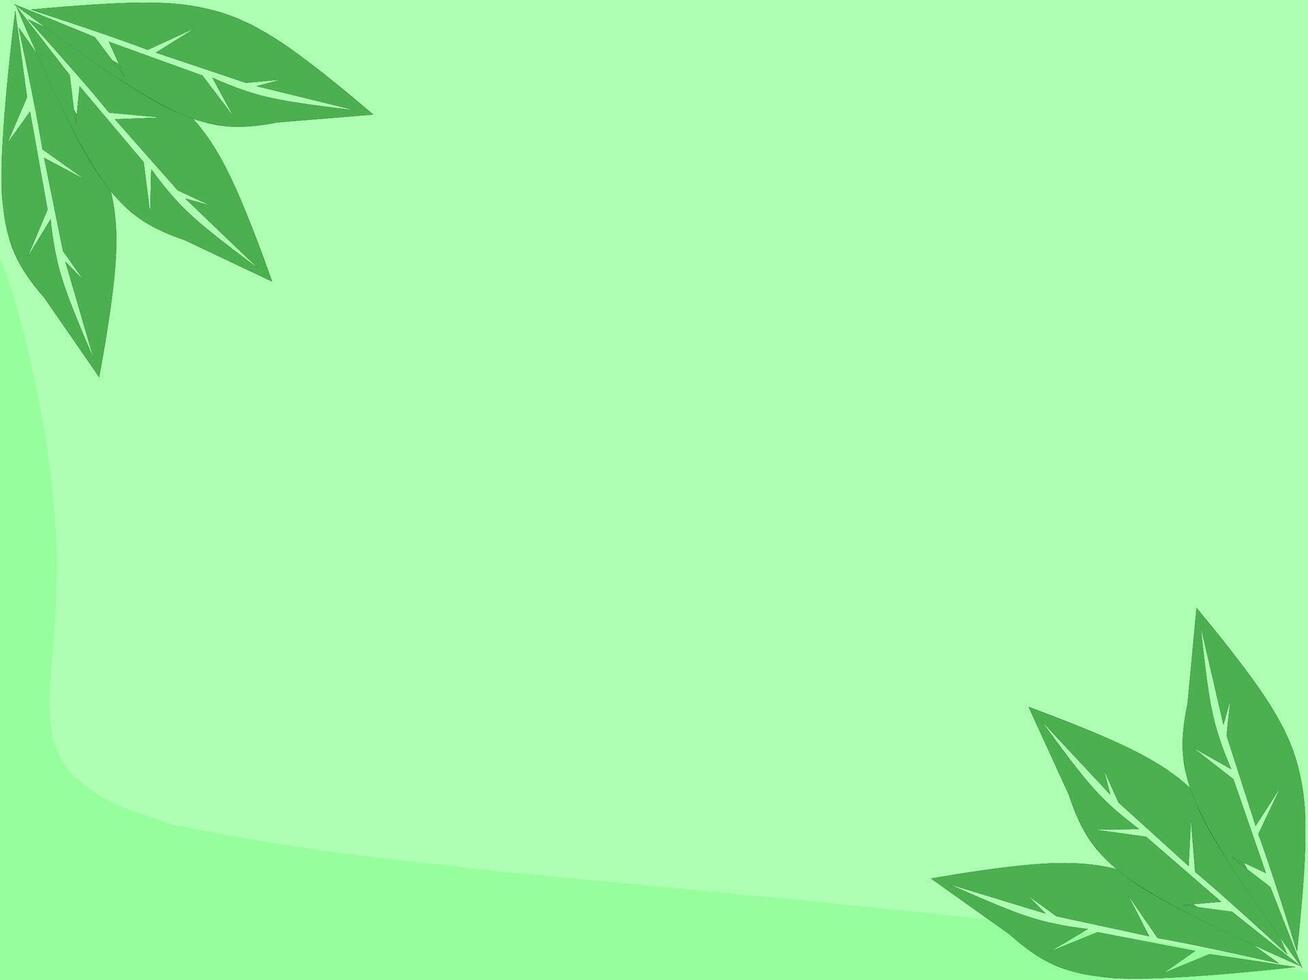 groen en blad kleur achtergrond illustratie vector